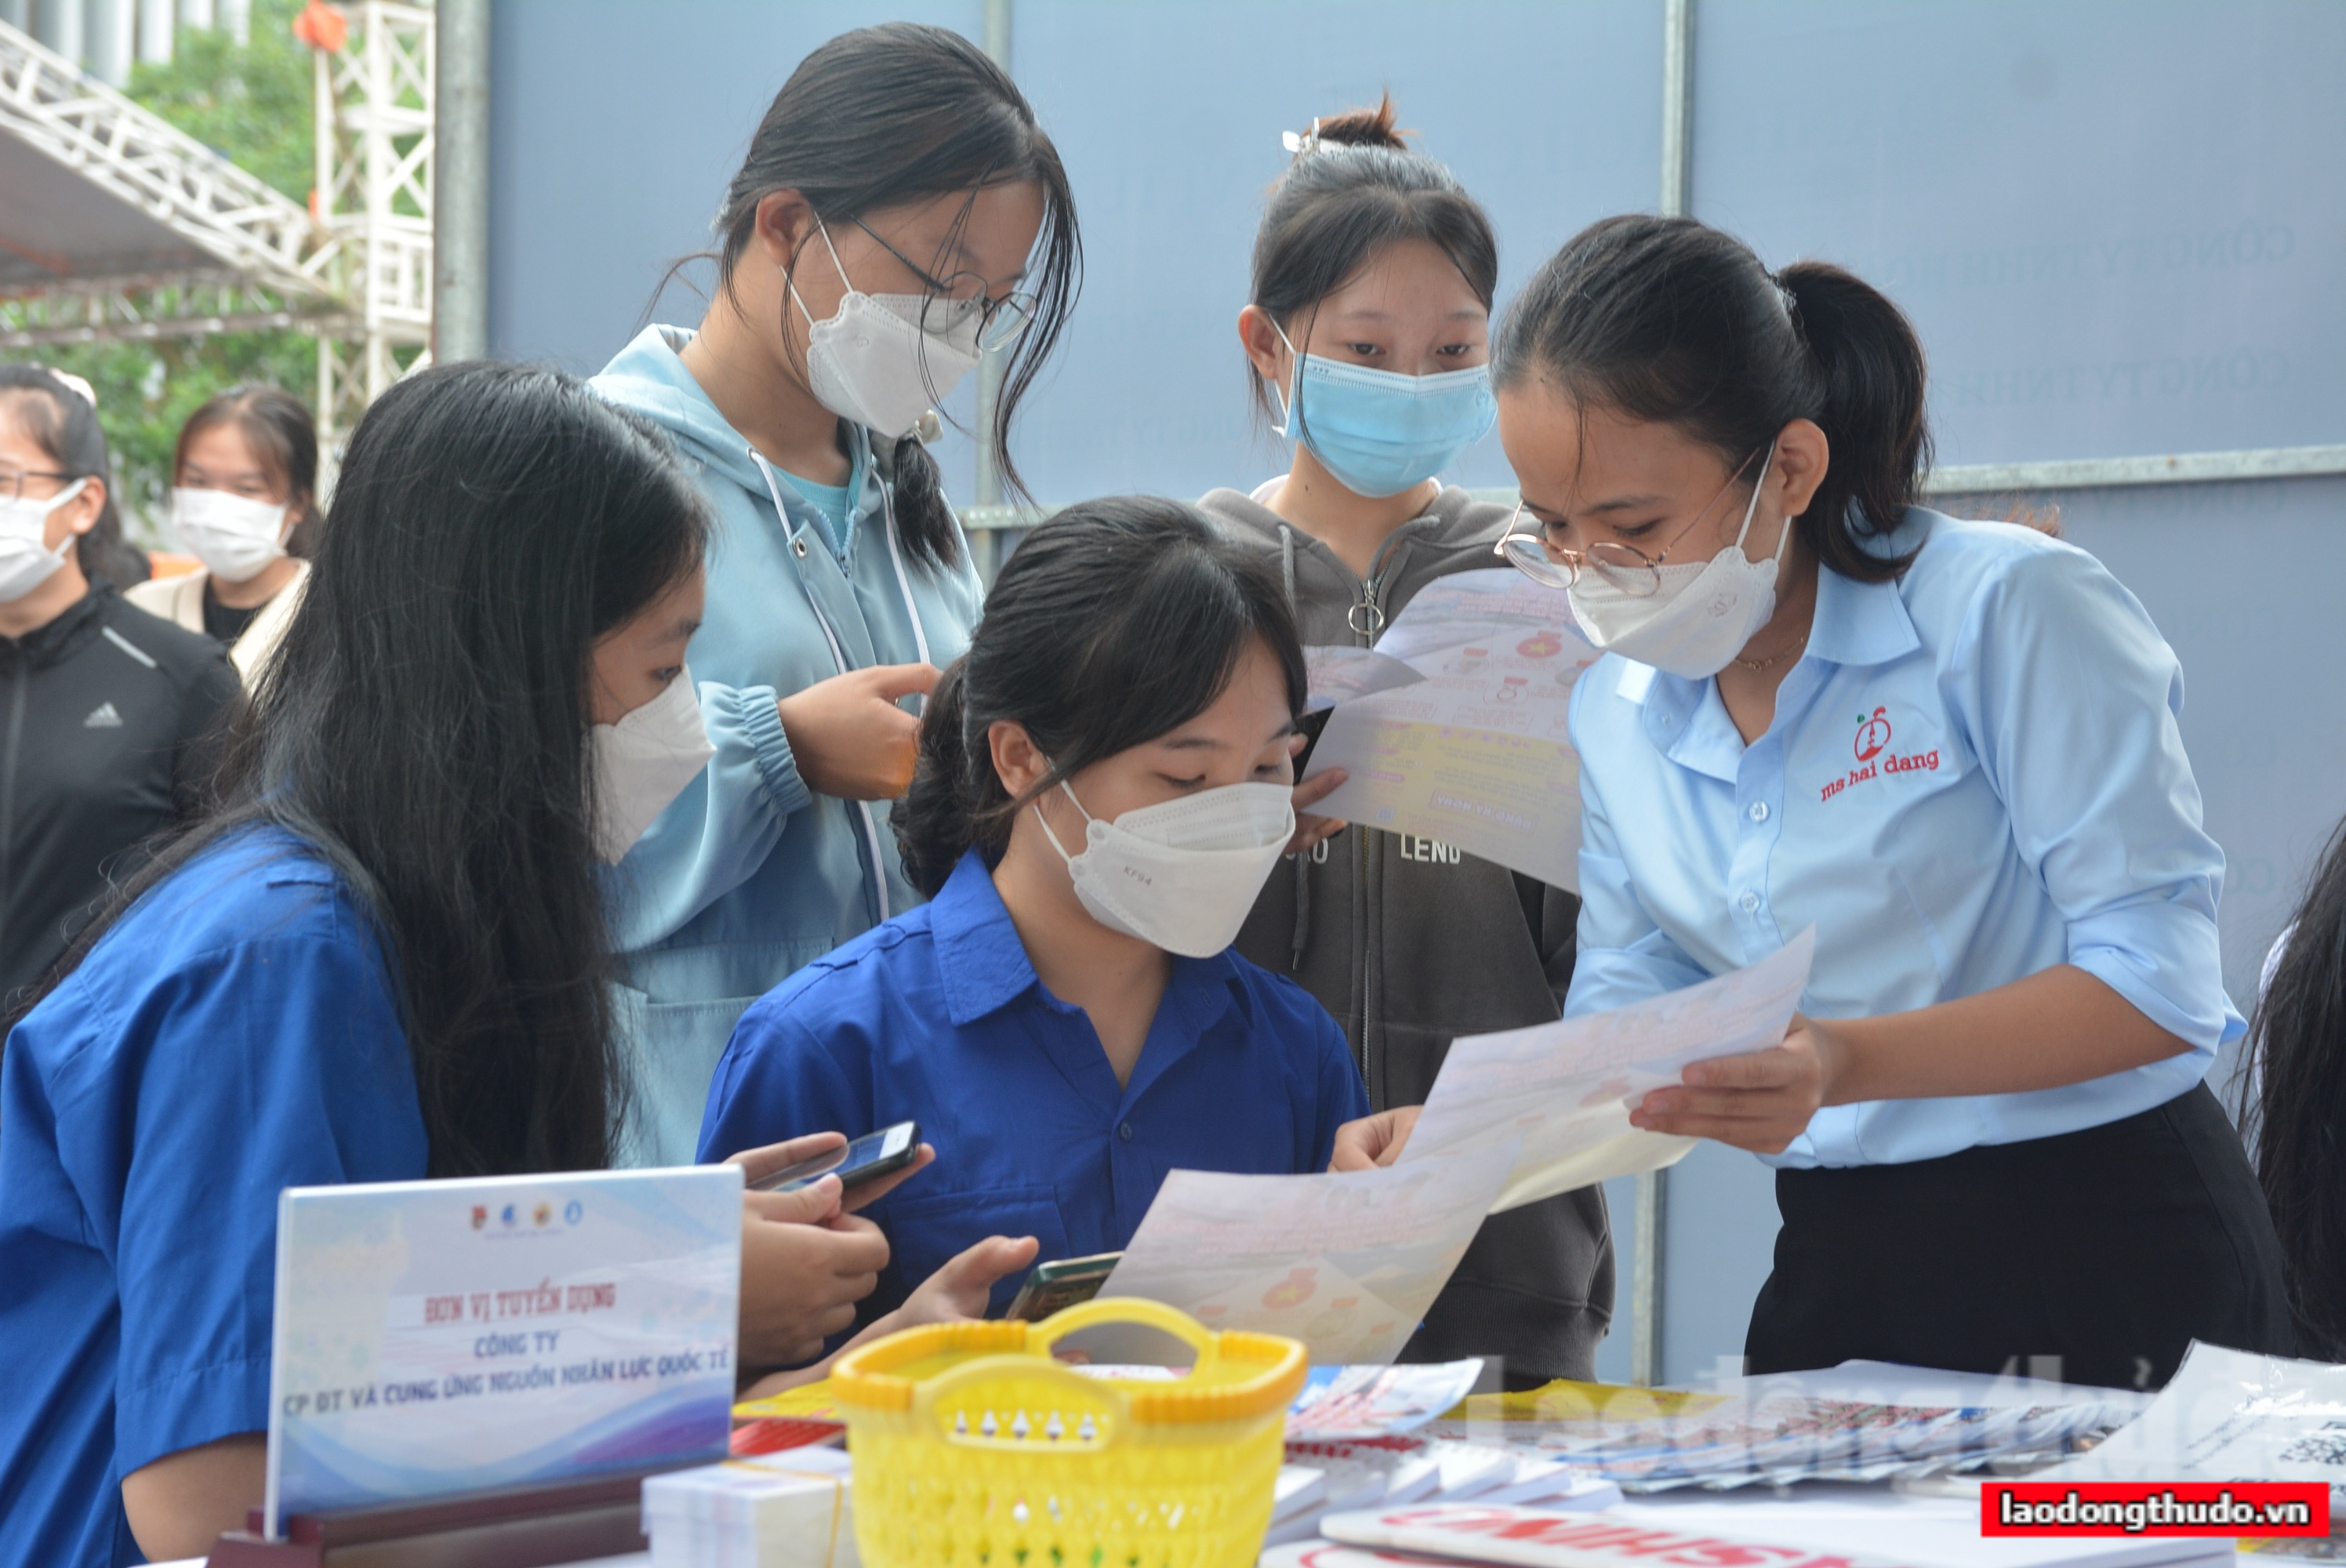 Doanh nghiệp Đà Nẵng đăng tuyển hàng nghìn lao động với mức lương cao cận Tết